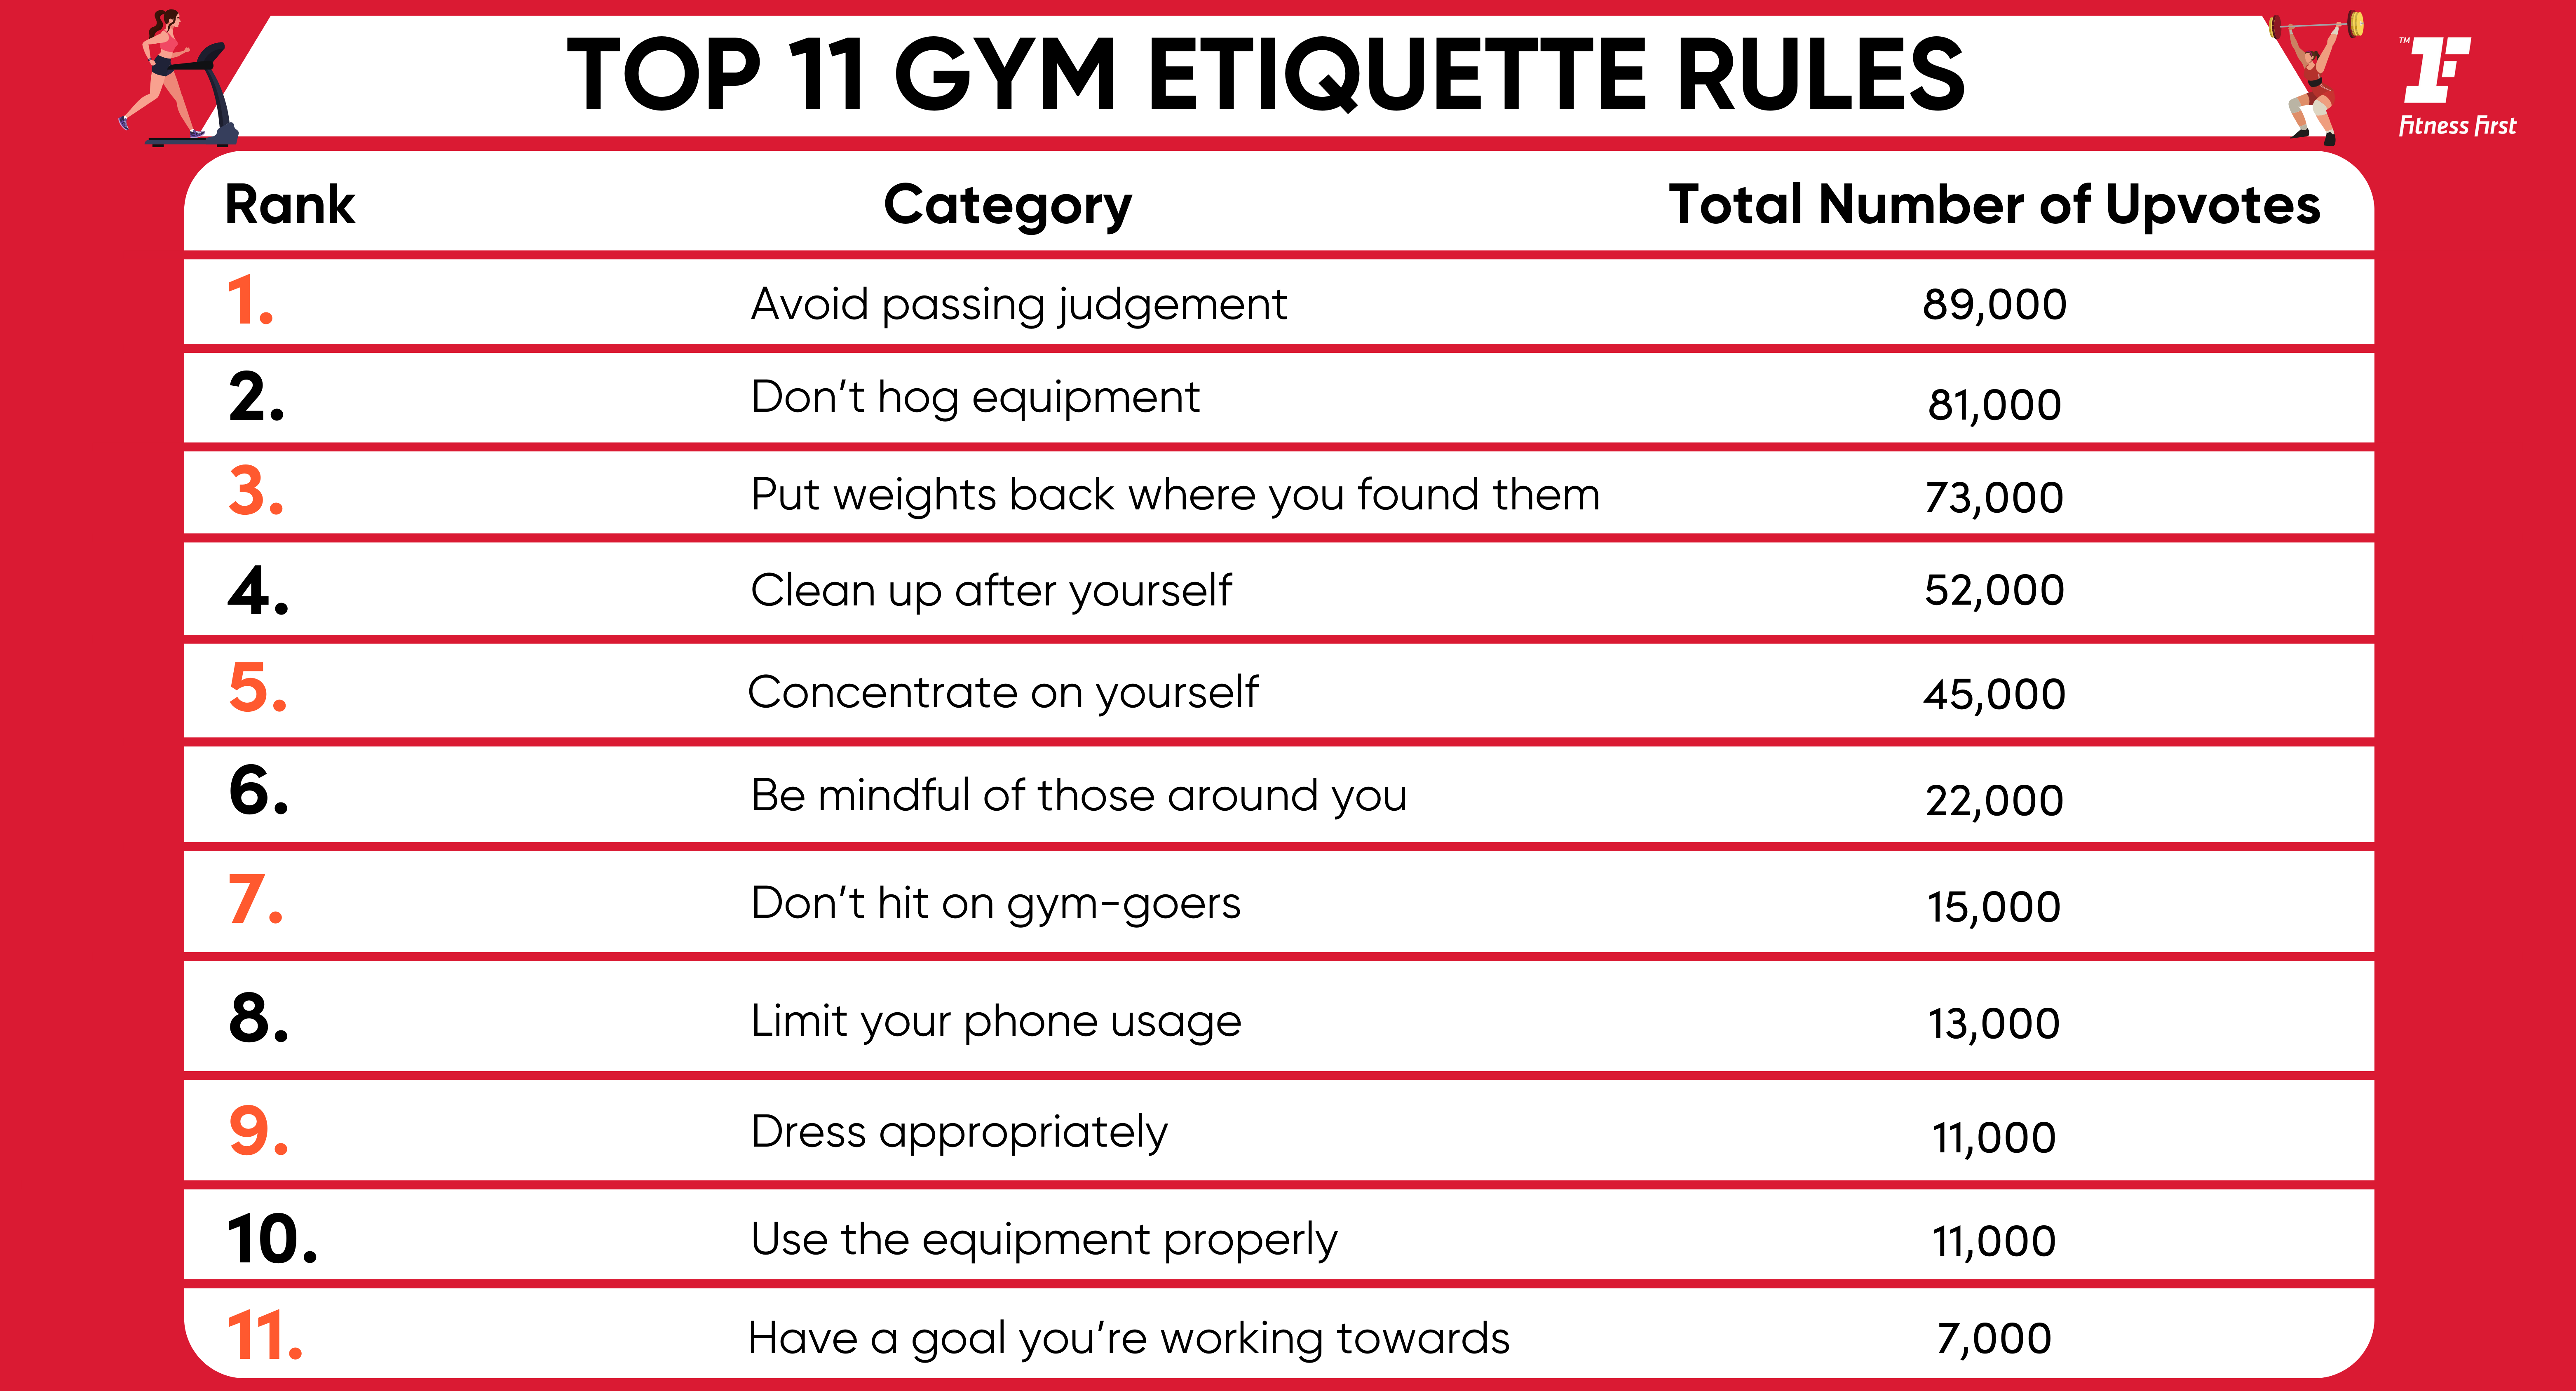 7 Gym Etiquette Rules You Should Follow